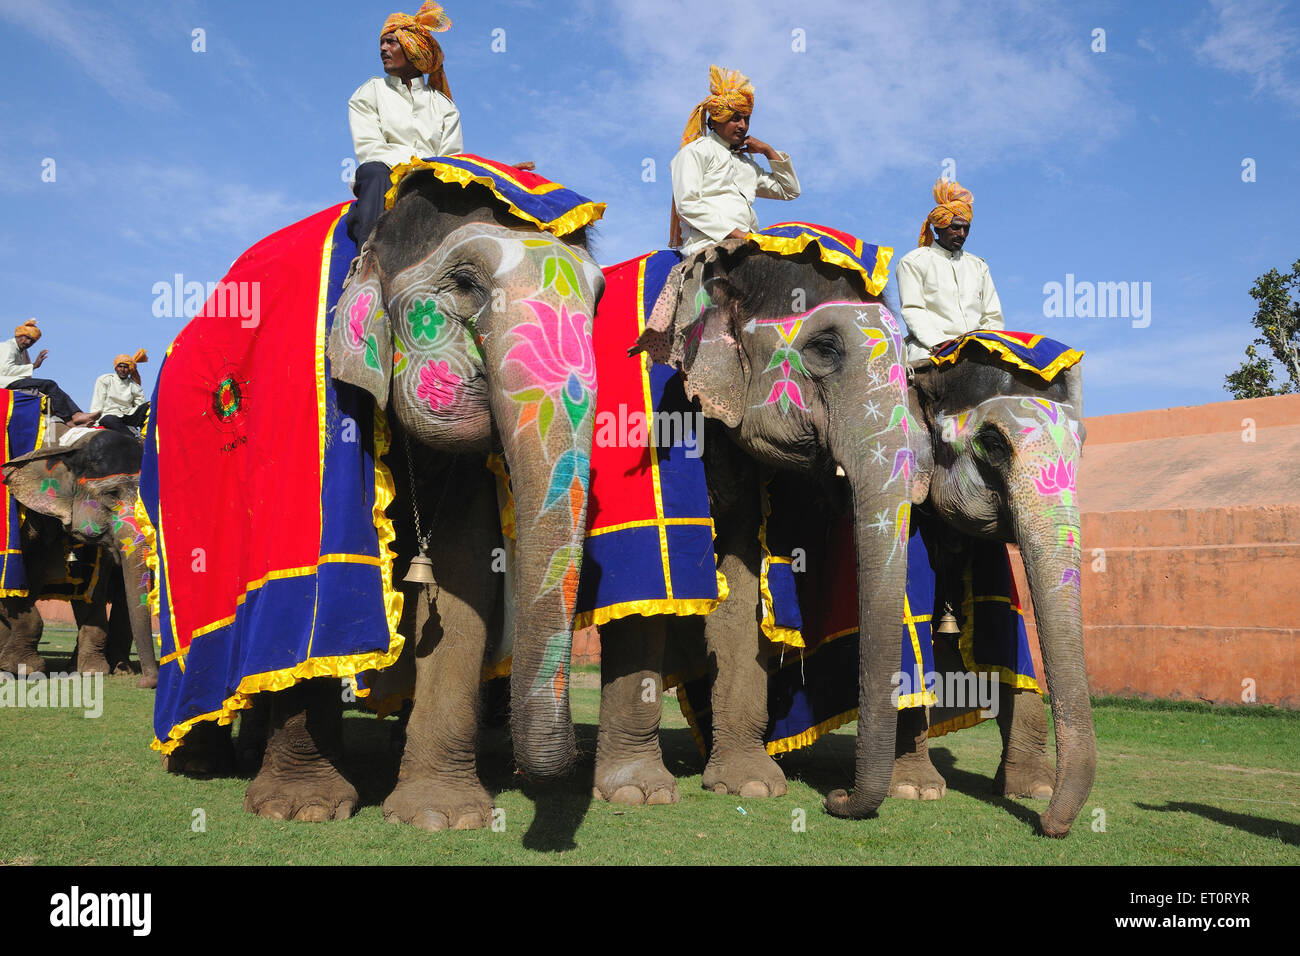 Mahouts on elephant ; Jaipur ; Rajasthan ; India Stock Photo